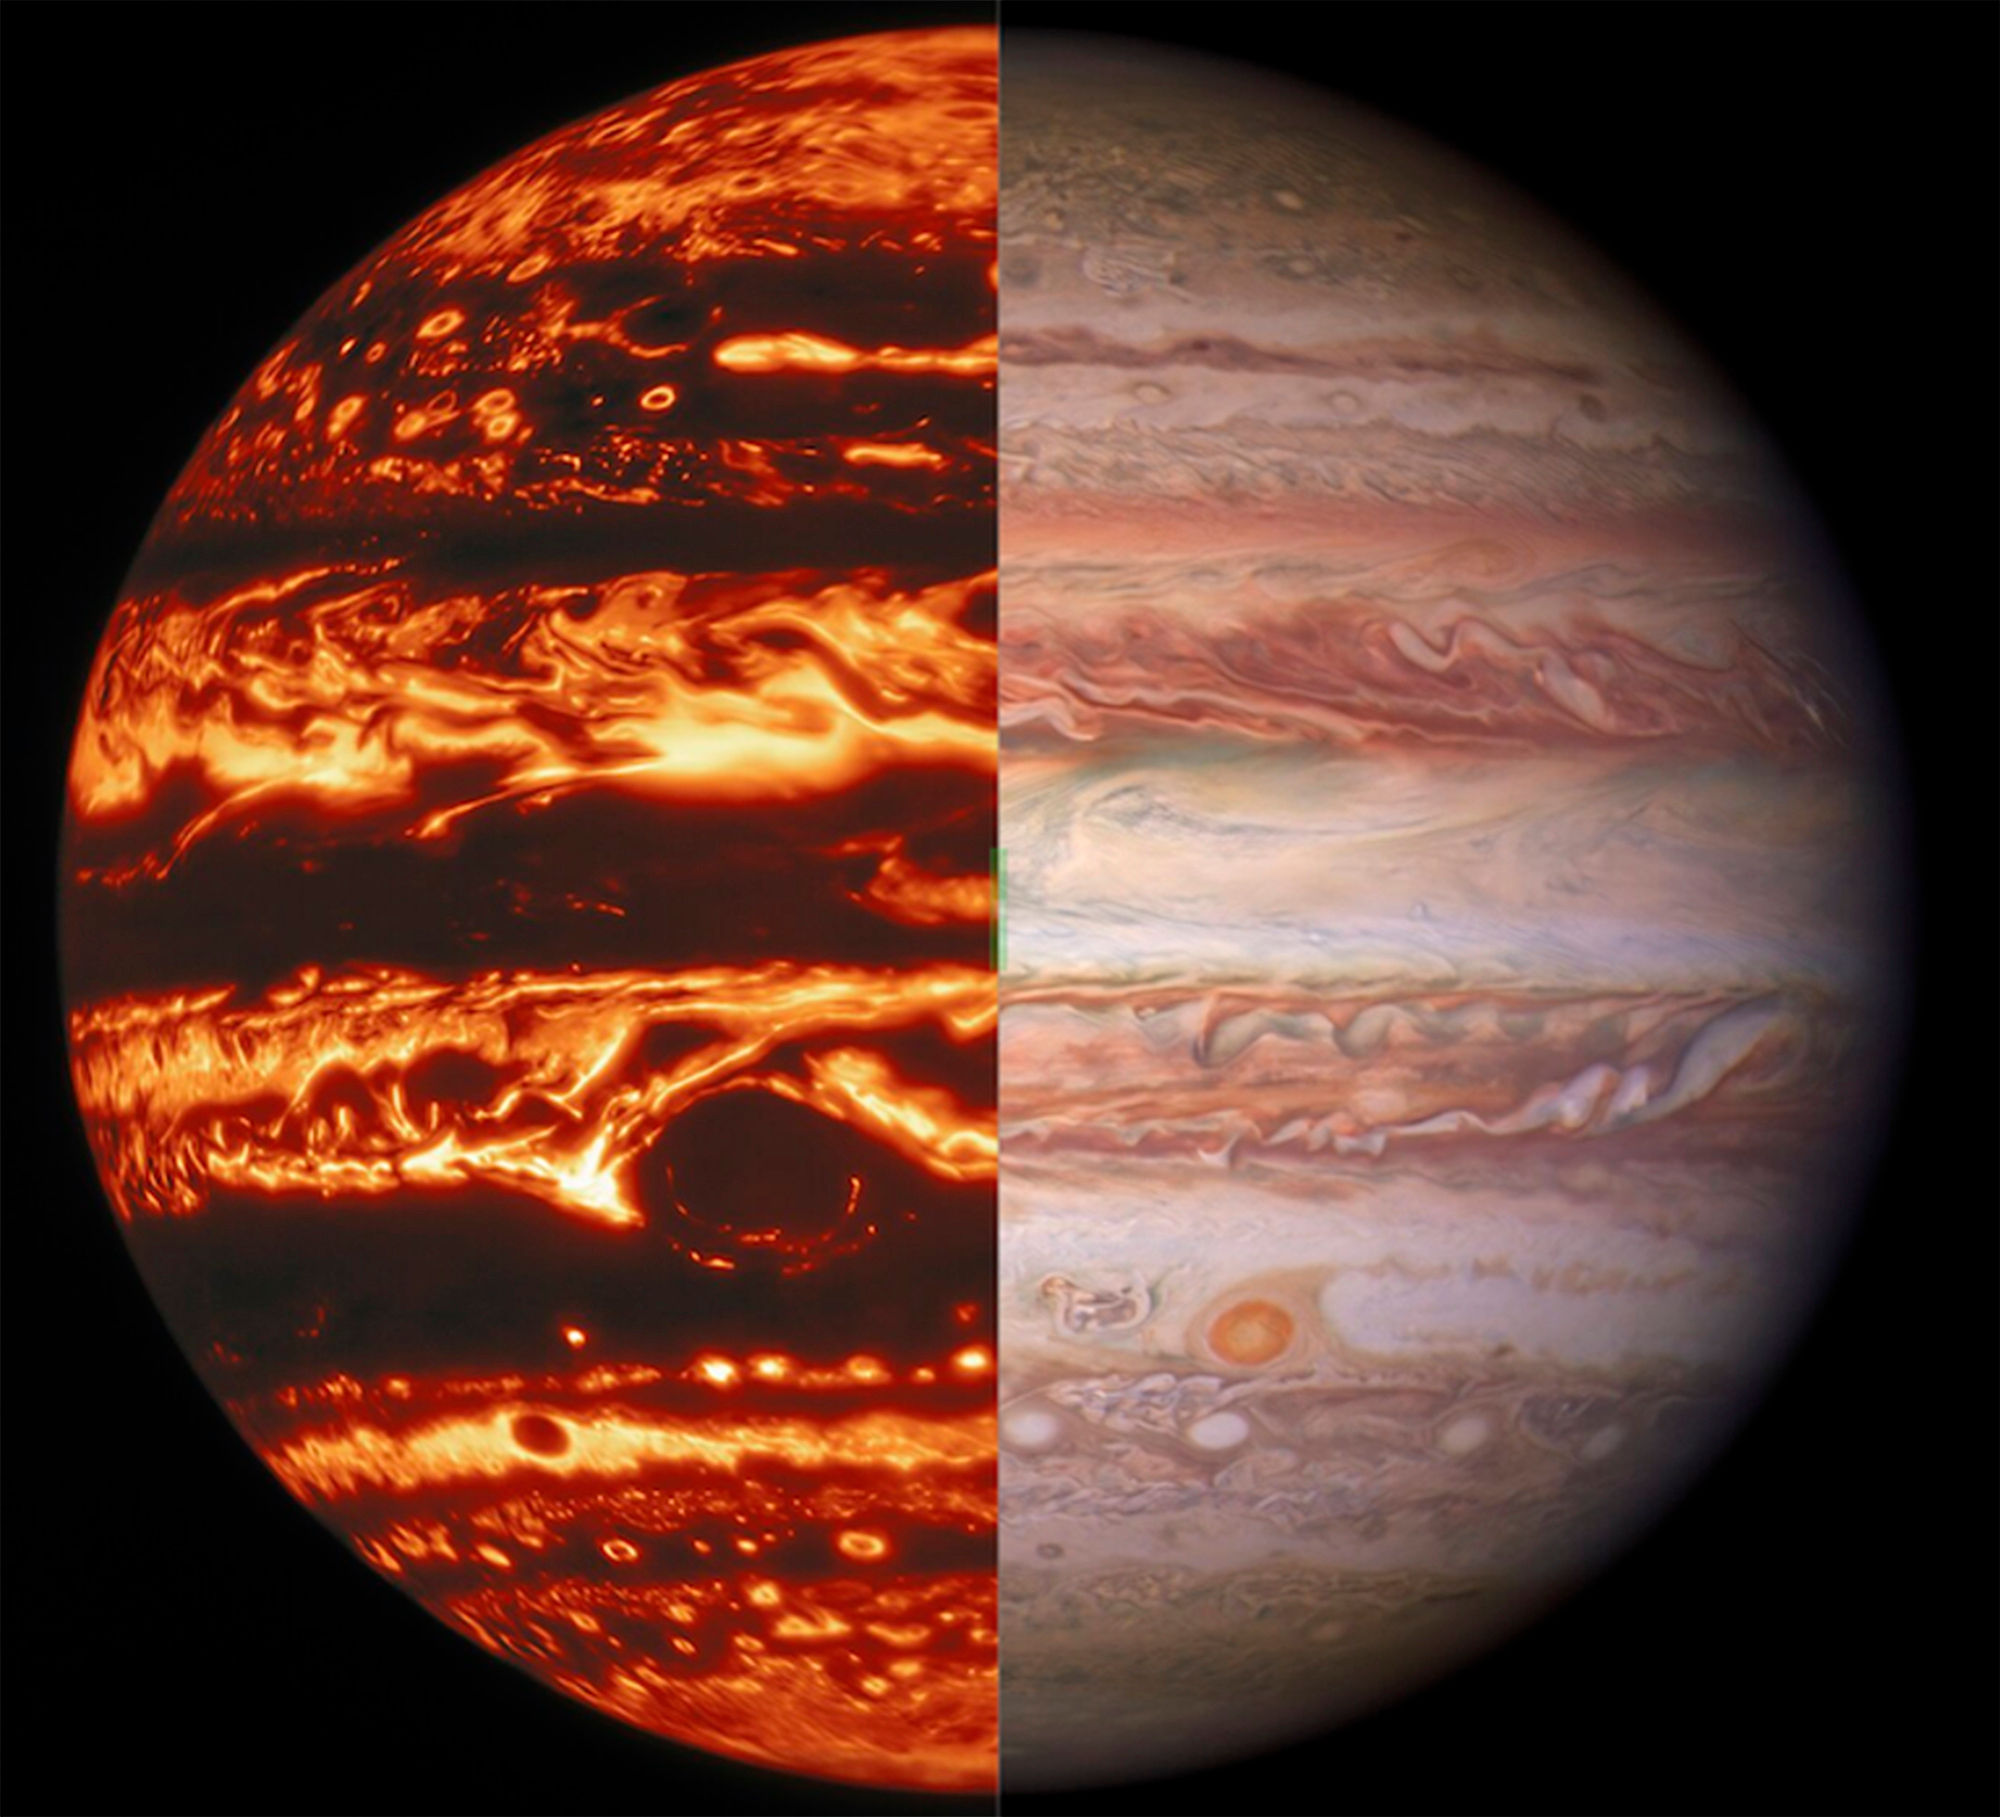 Gaias latest data release helps scientists find Super Jupiter